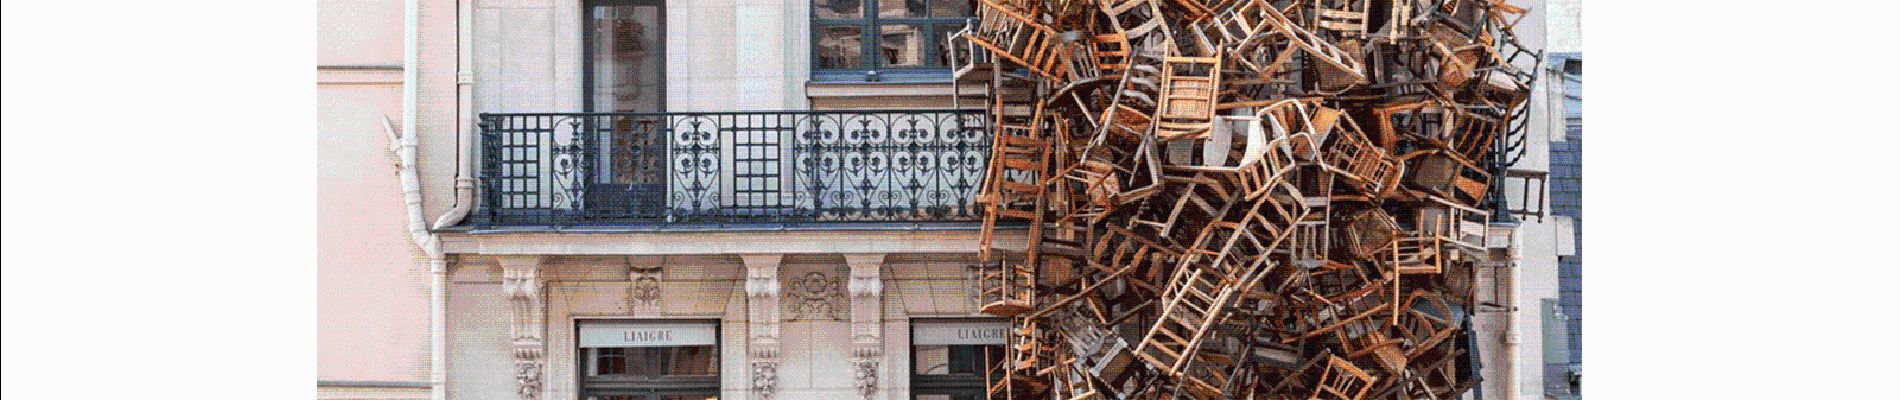 POI Paris - exposition temporaire chaises aux fenetres - Photo